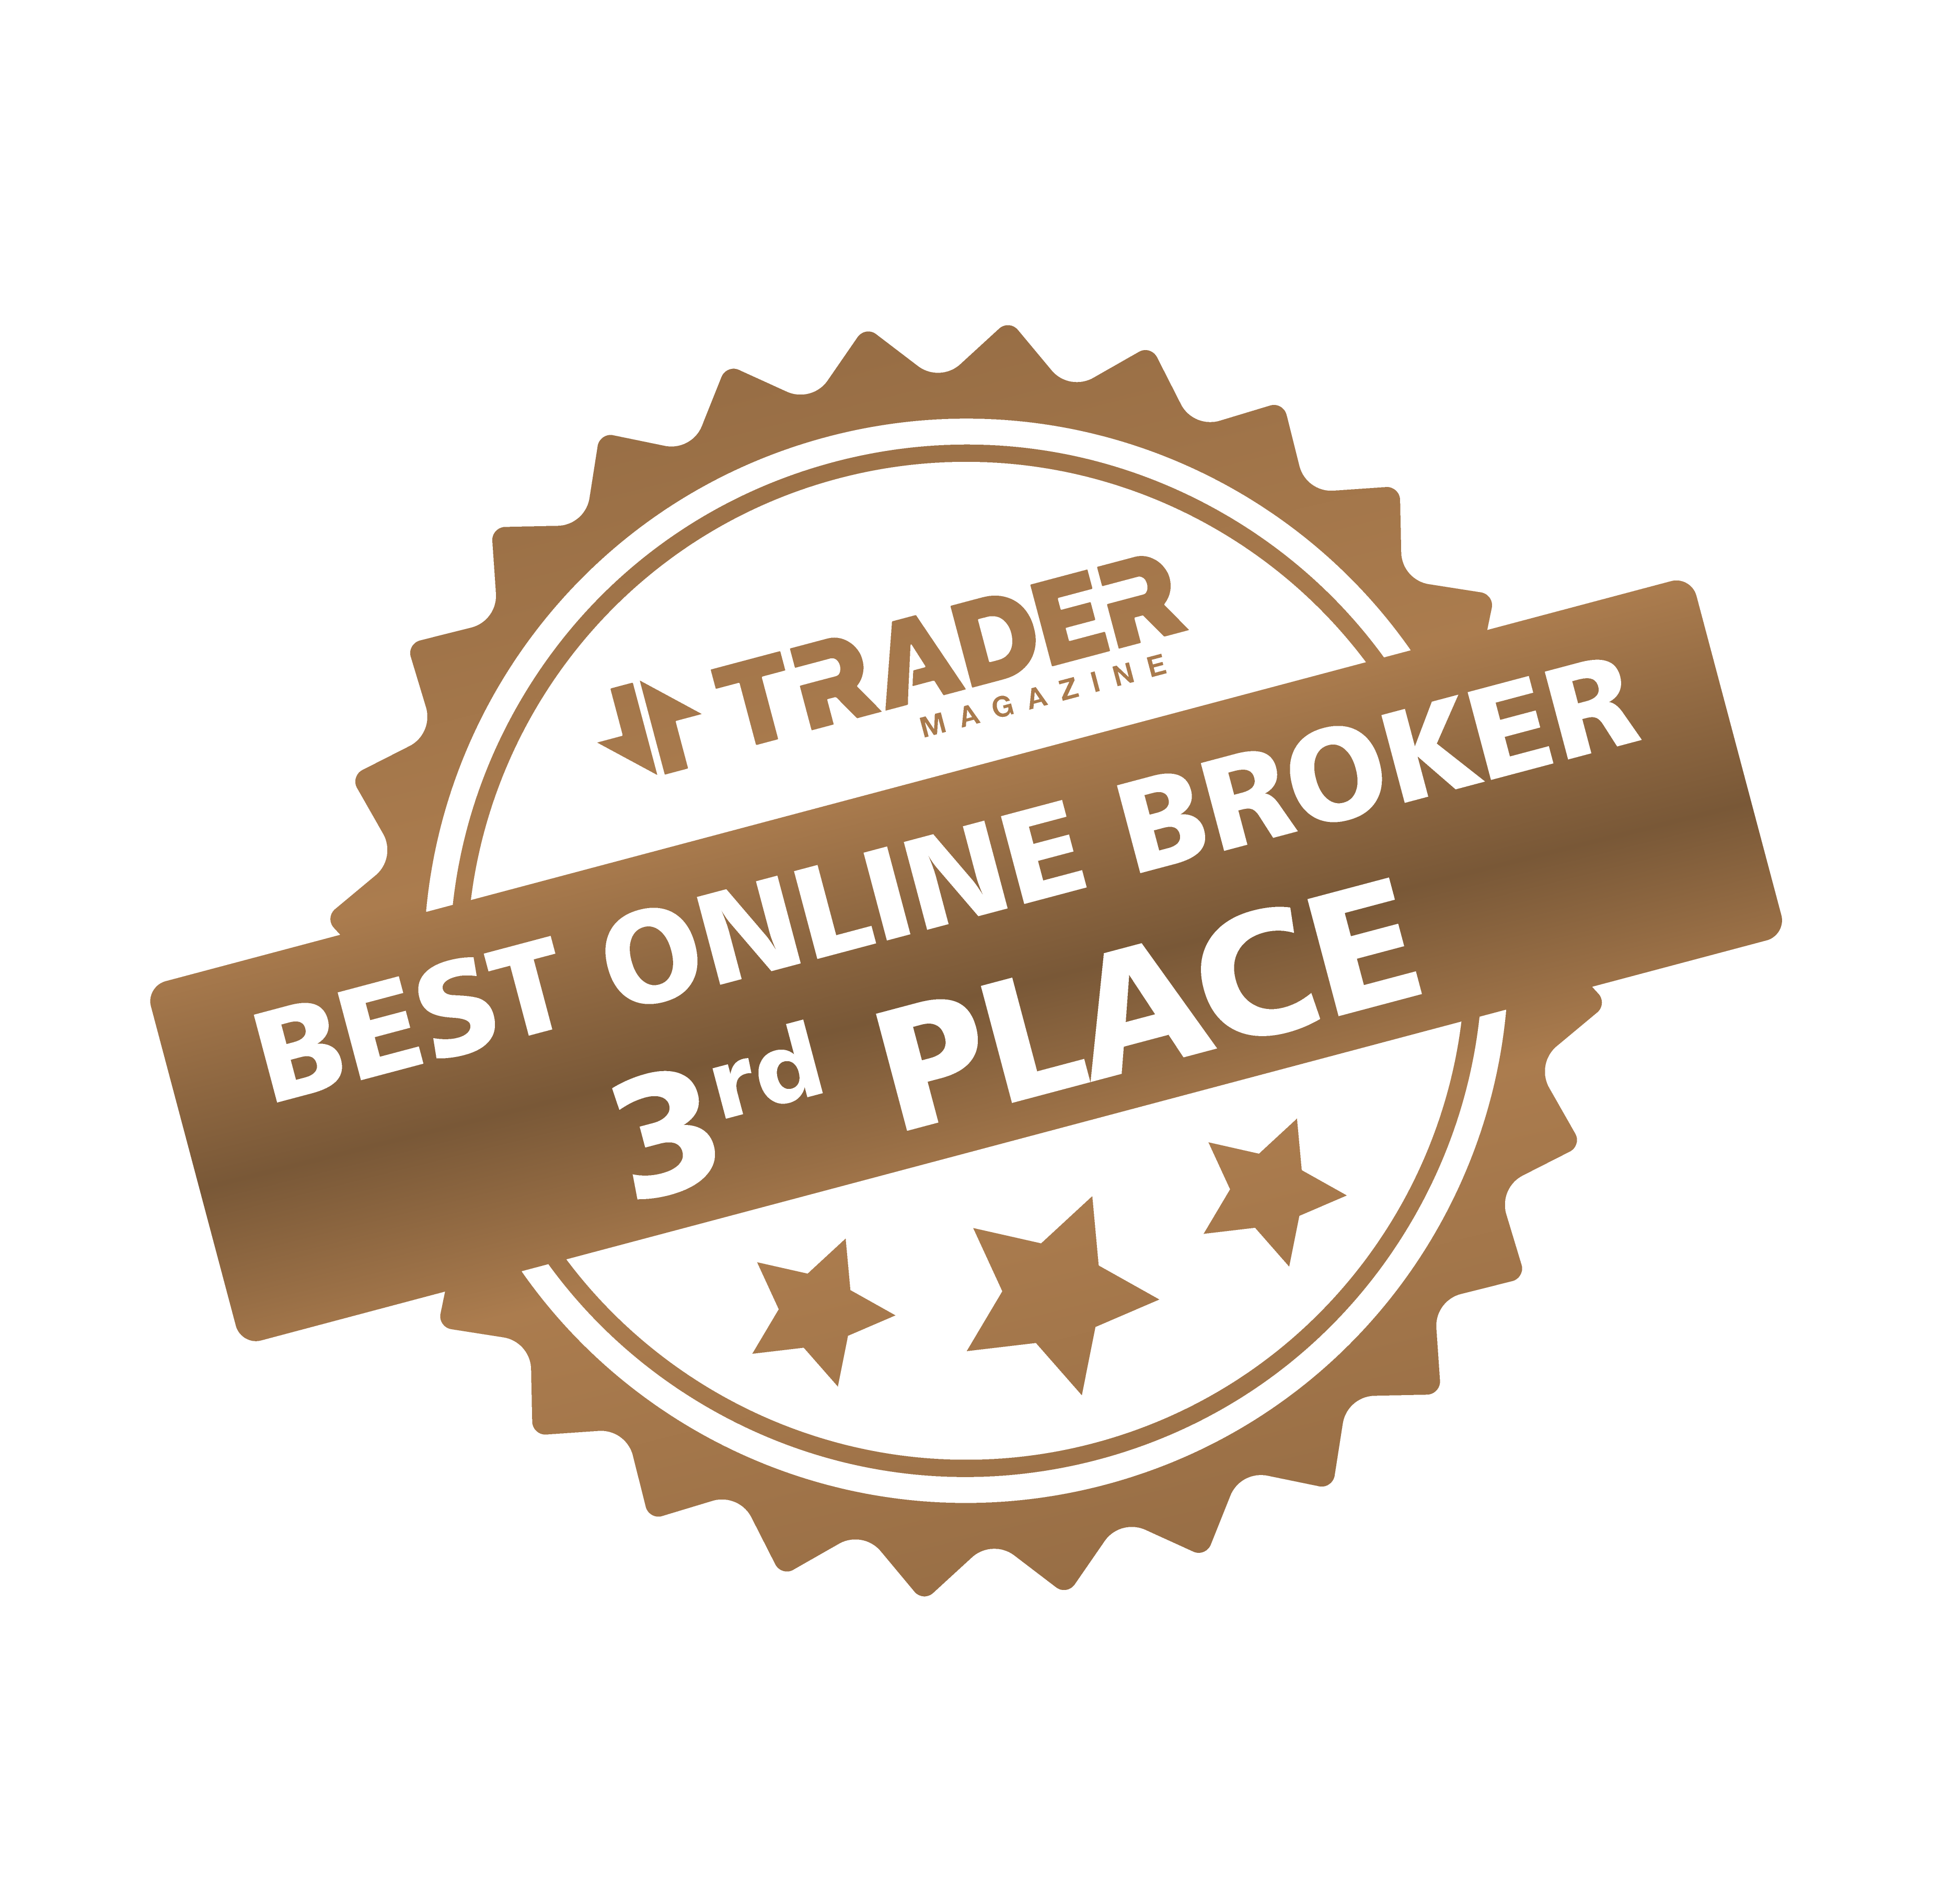 Golden Brokers | AWARD WINNING BROKER
